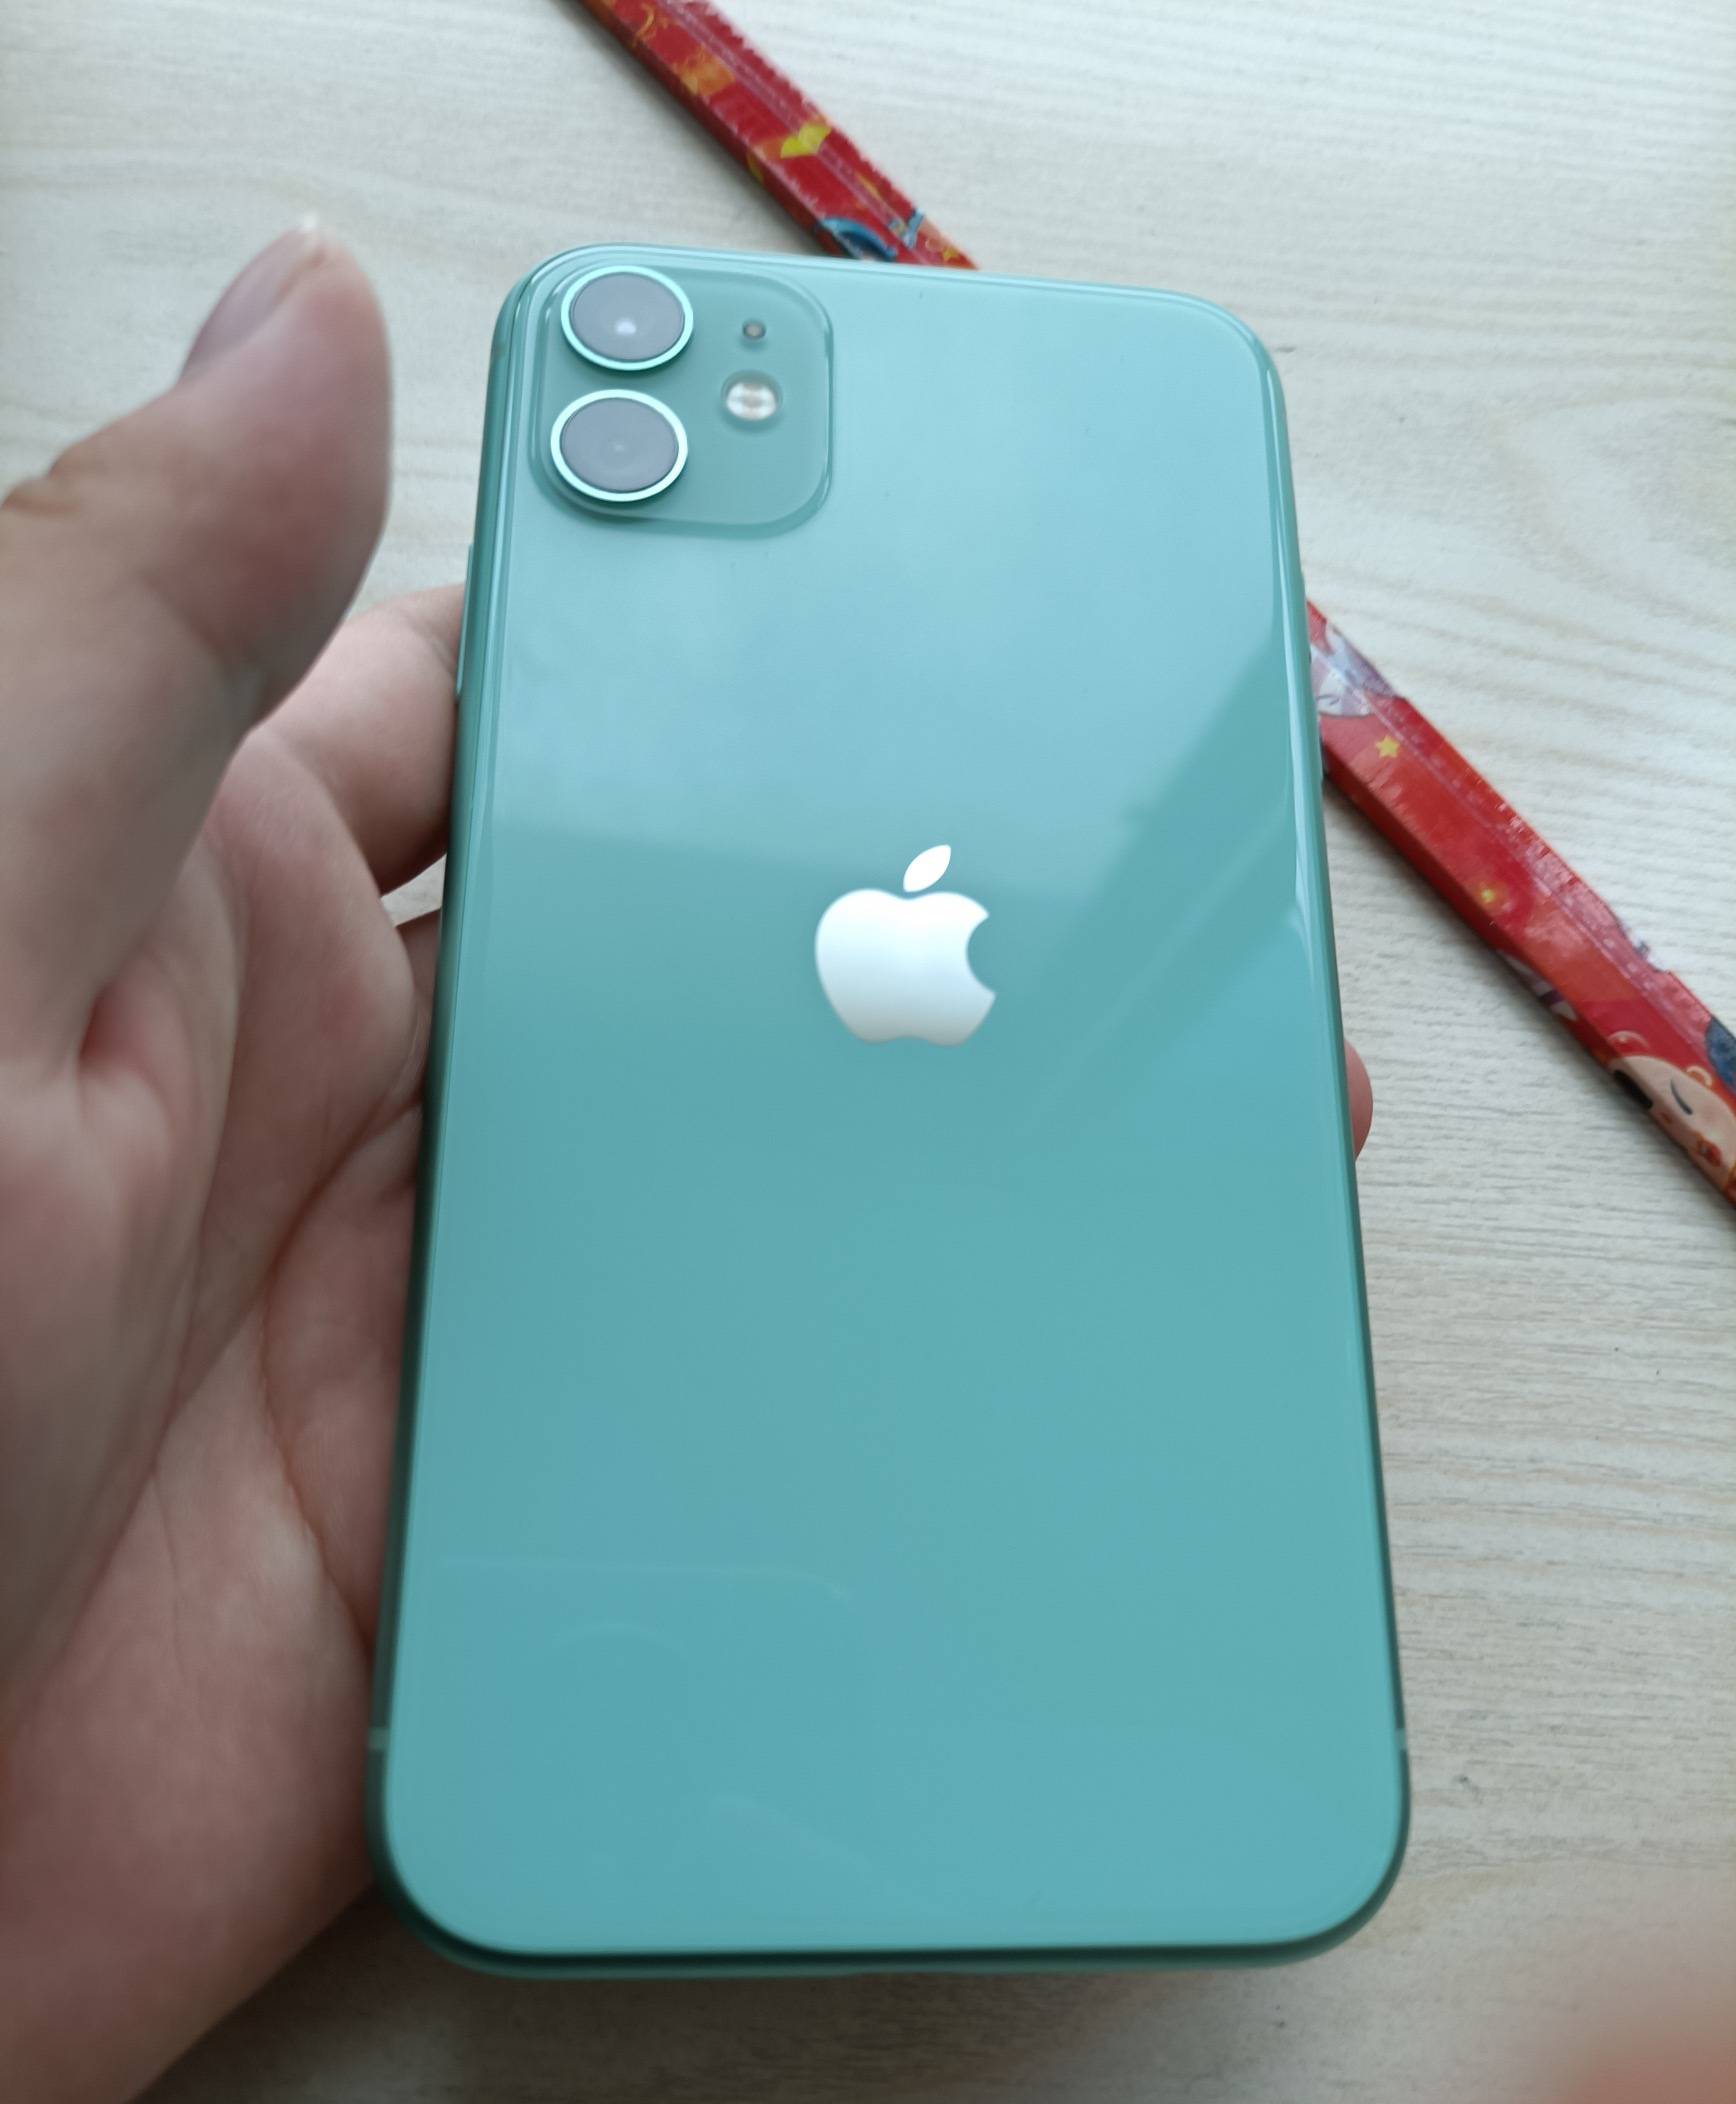 这是一台蓝色的苹果11,从手机背面来看的确跟新机器差不多,没有任何